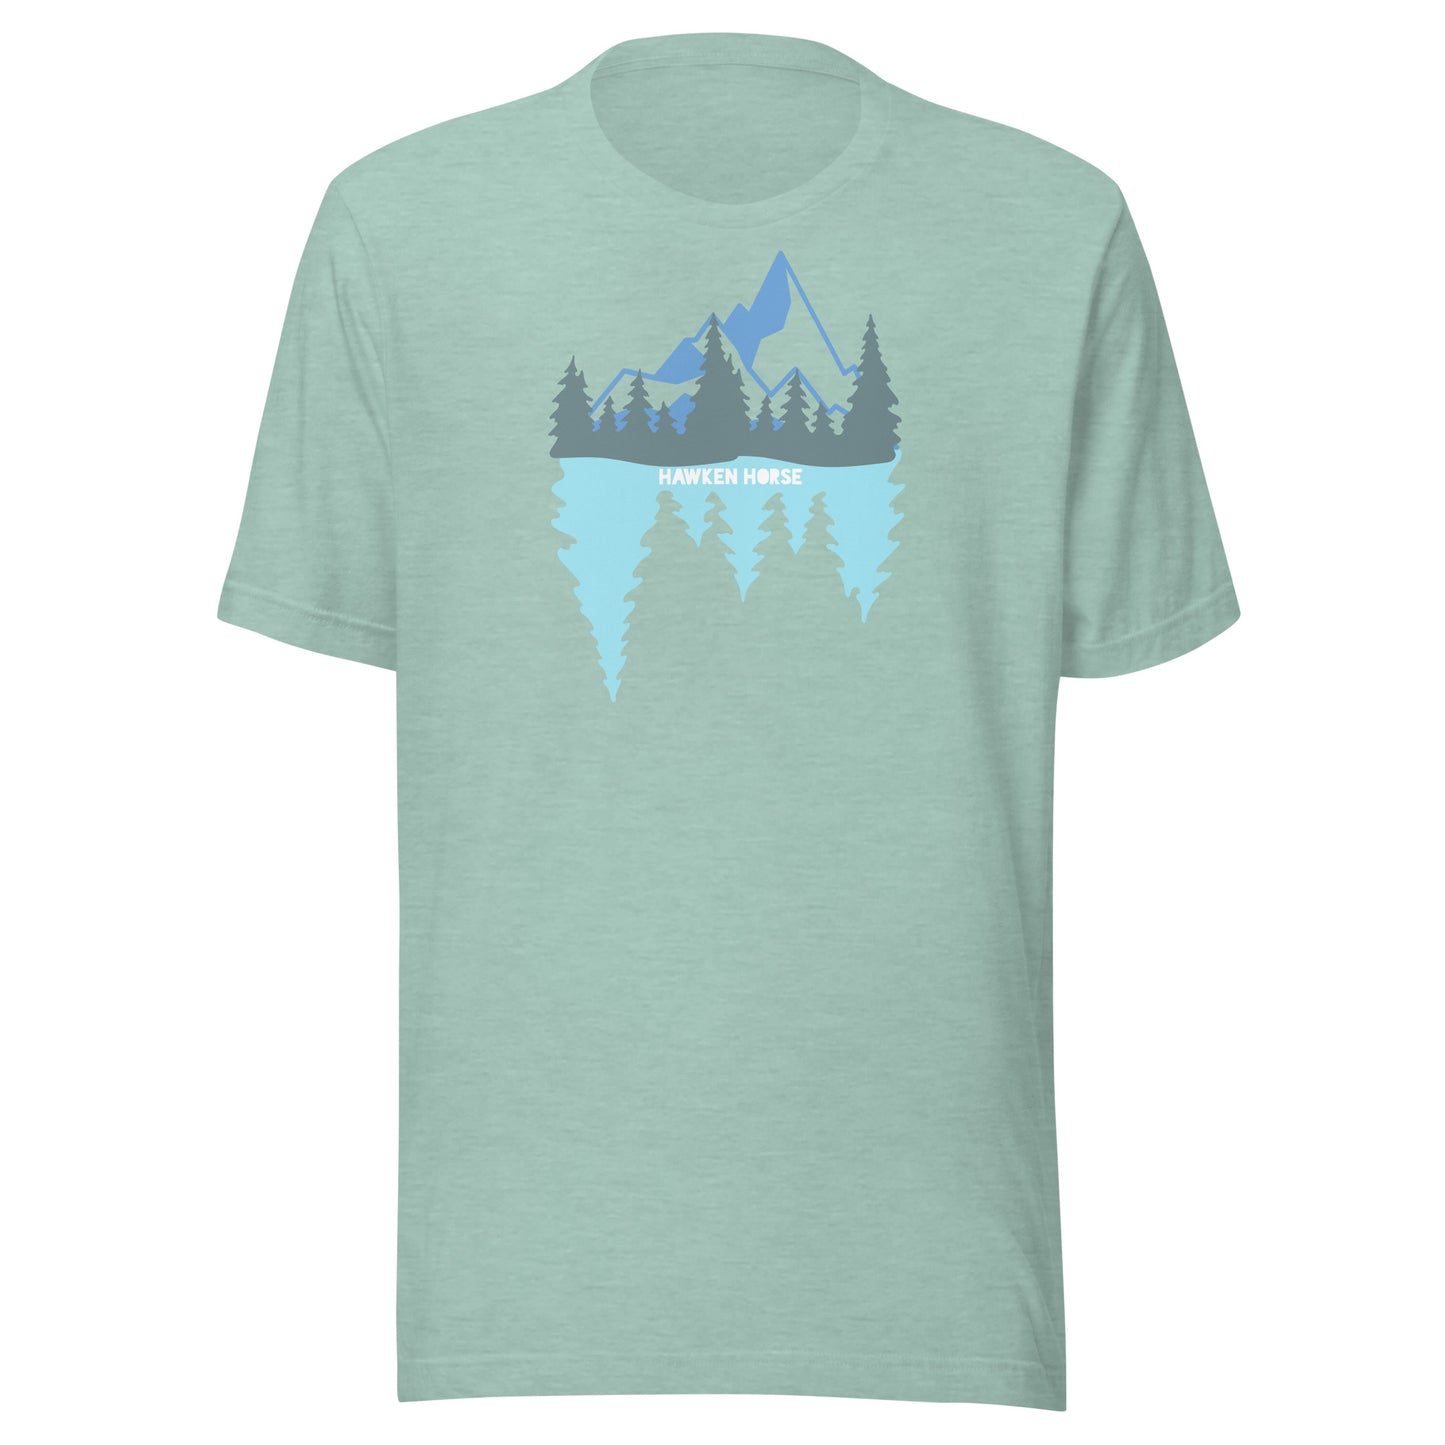 Mirror Lake t-shirt